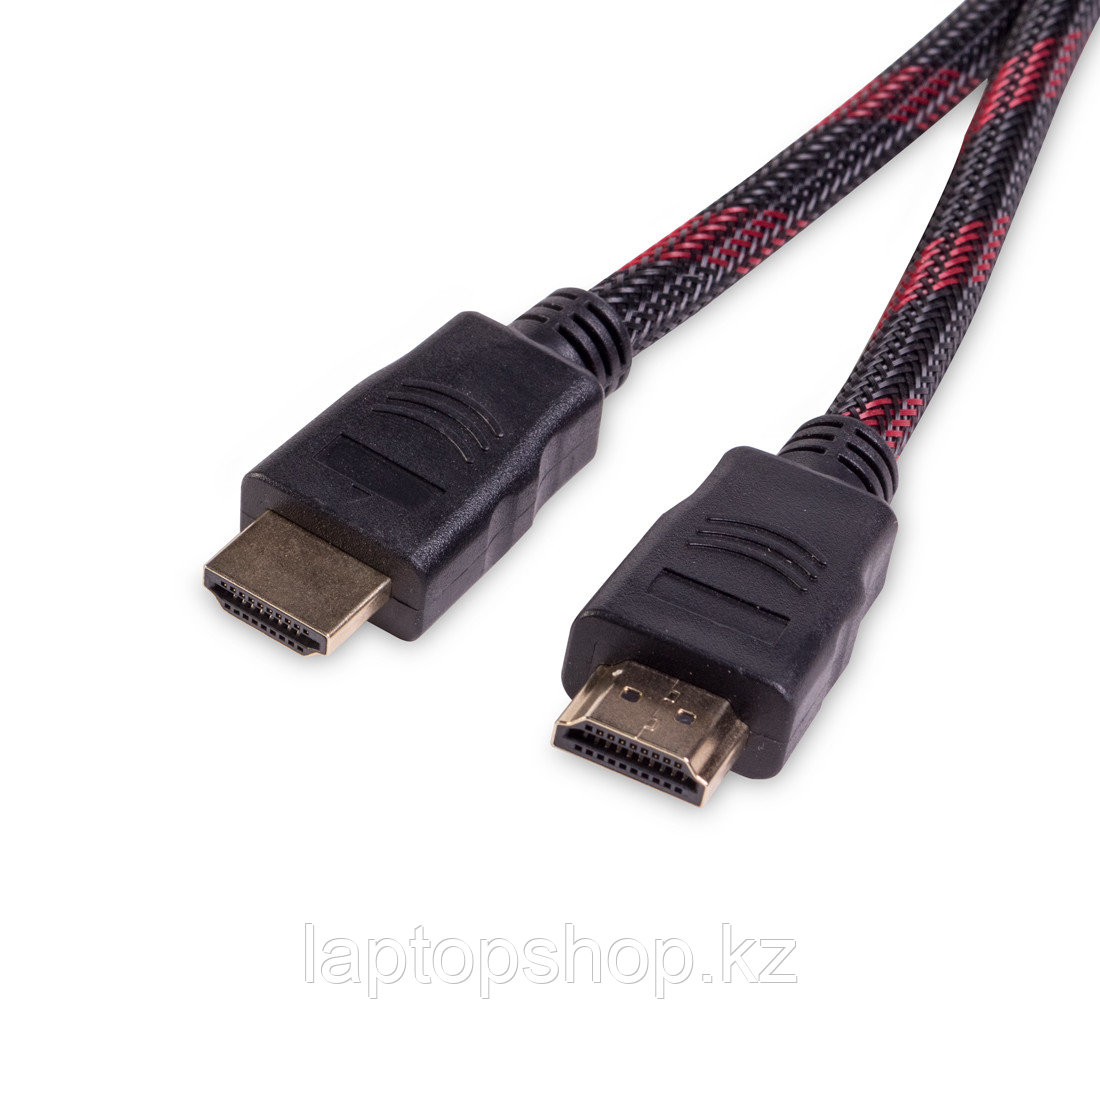 Интерфейсный кабель iPower HDMI-HDMI ver.1.4 3 м. 5 в. (iPiHDMi30)